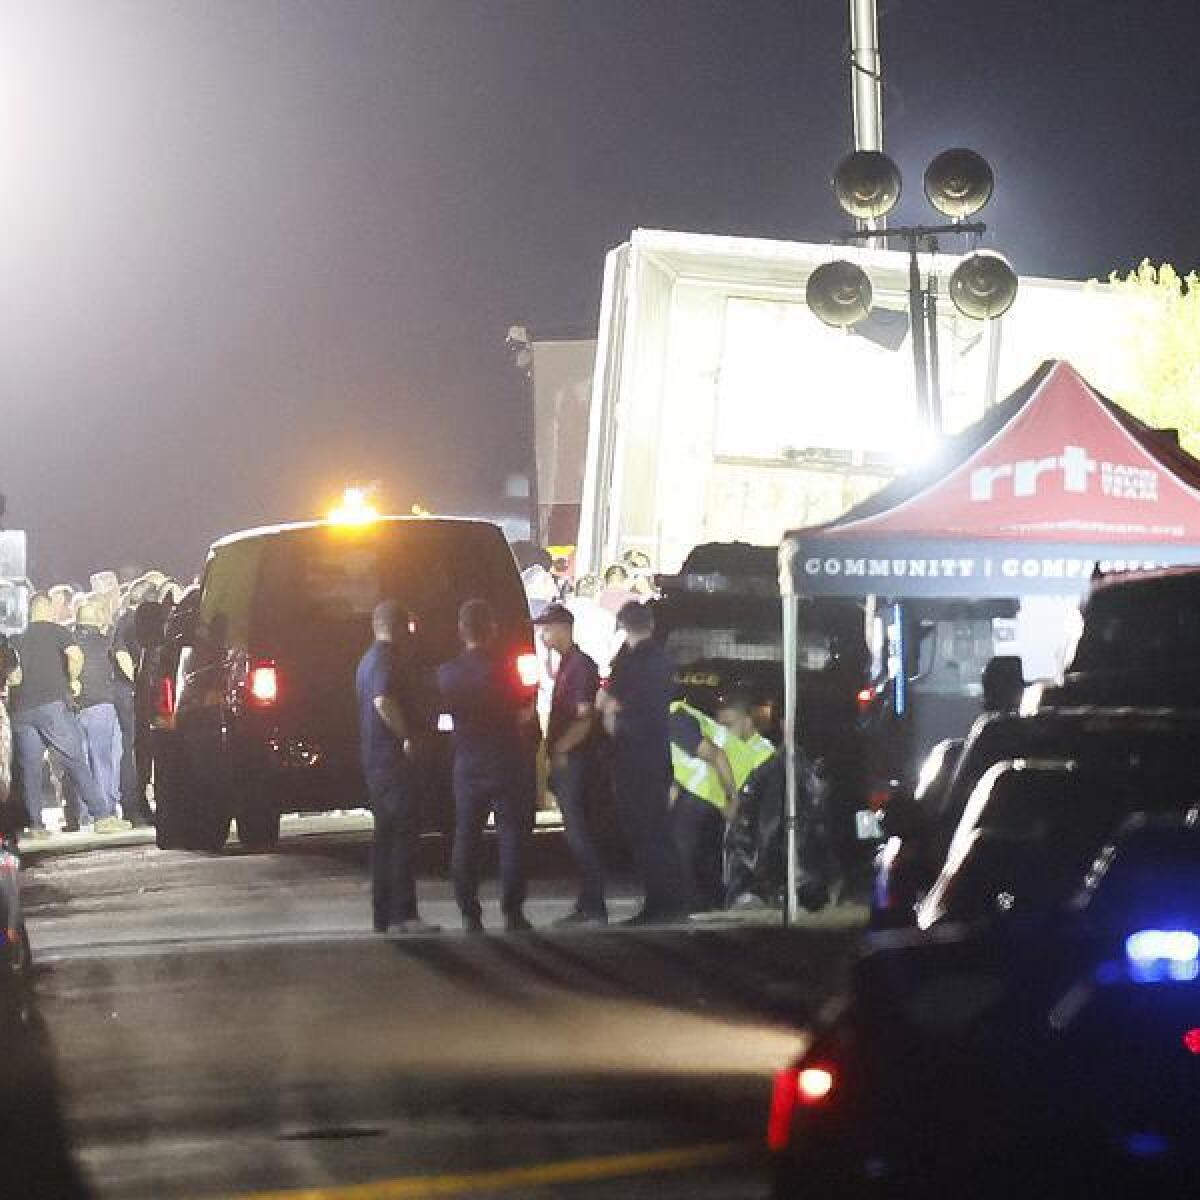 A roadblock near where 46 migrants were found dead in San Antonio